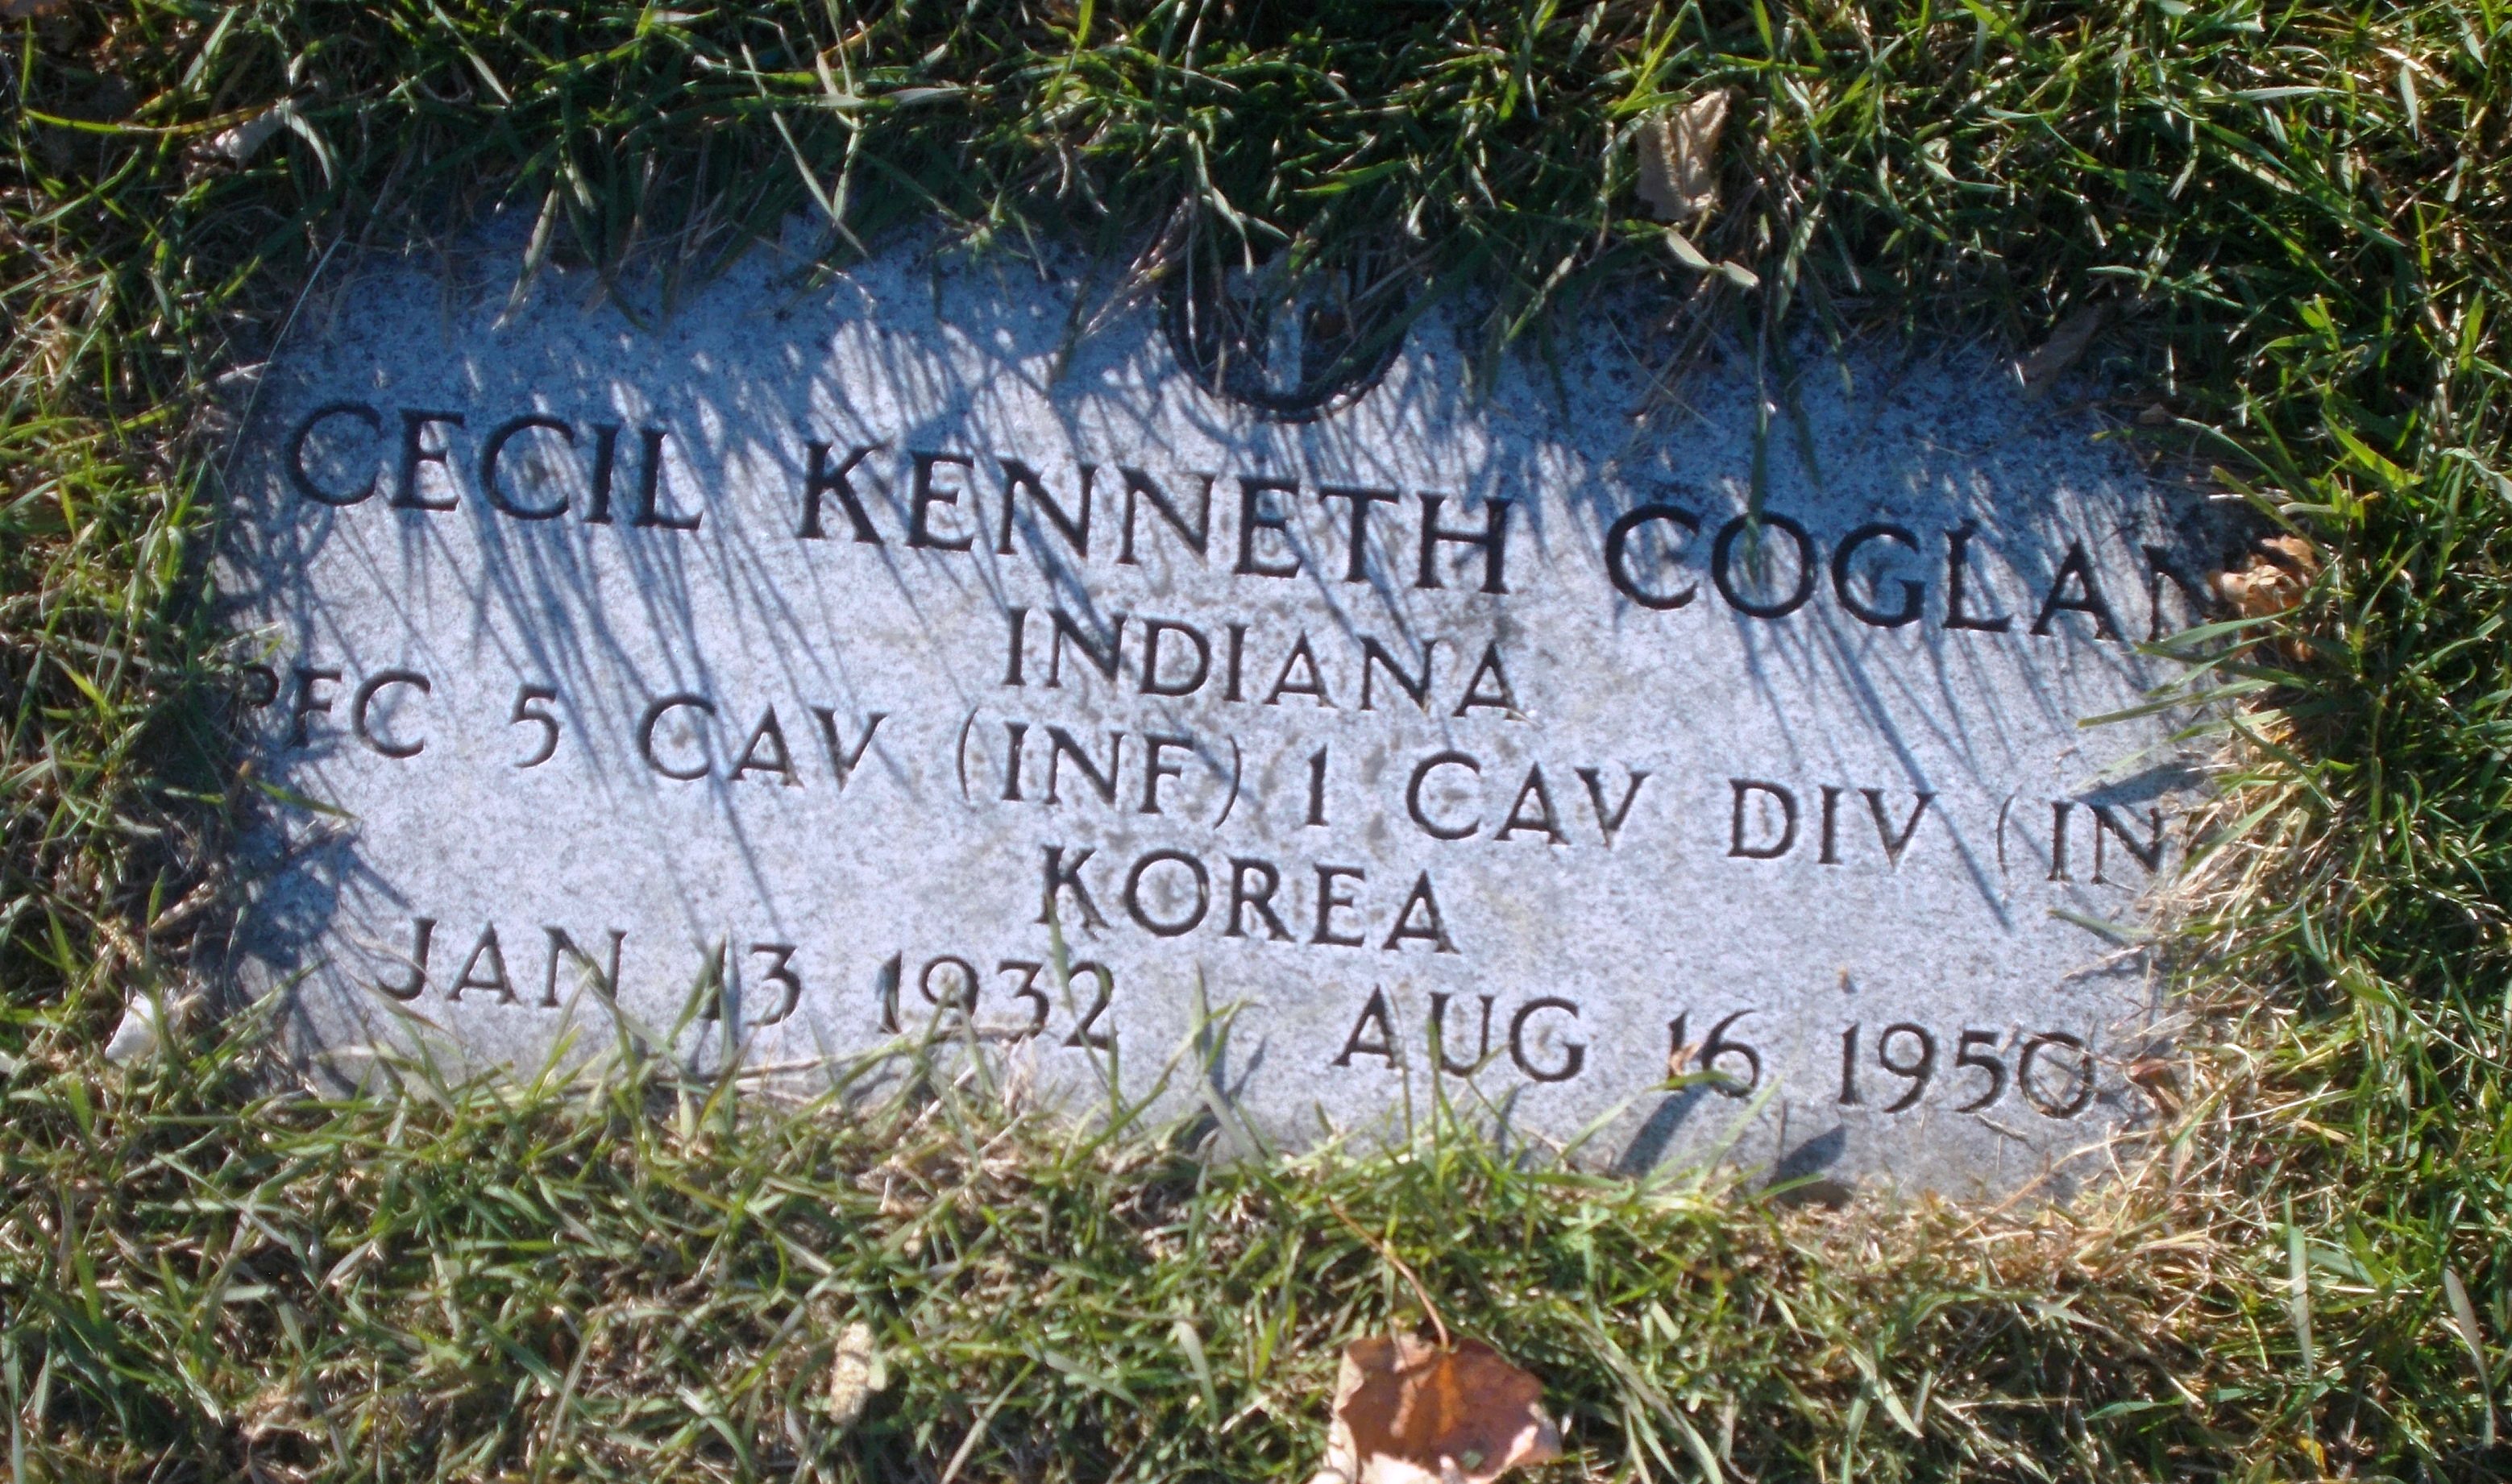 Cecil Kenneth Coglan